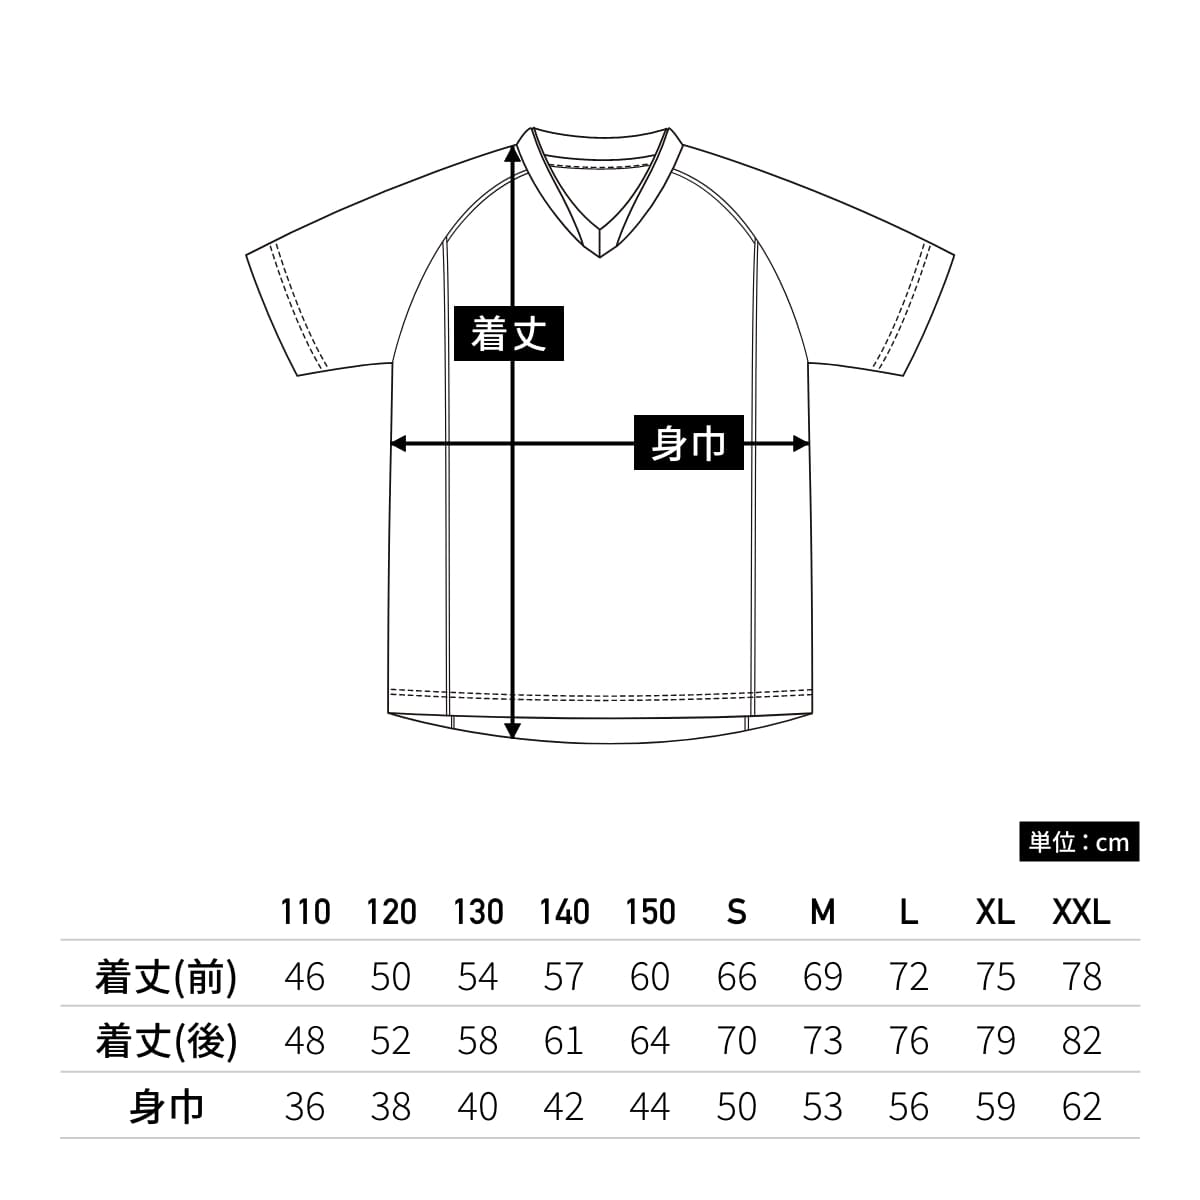 【送料無料】ベーシックサッカーシャツ | ユニフォーム | 1枚 | P1910 | ターコイズ